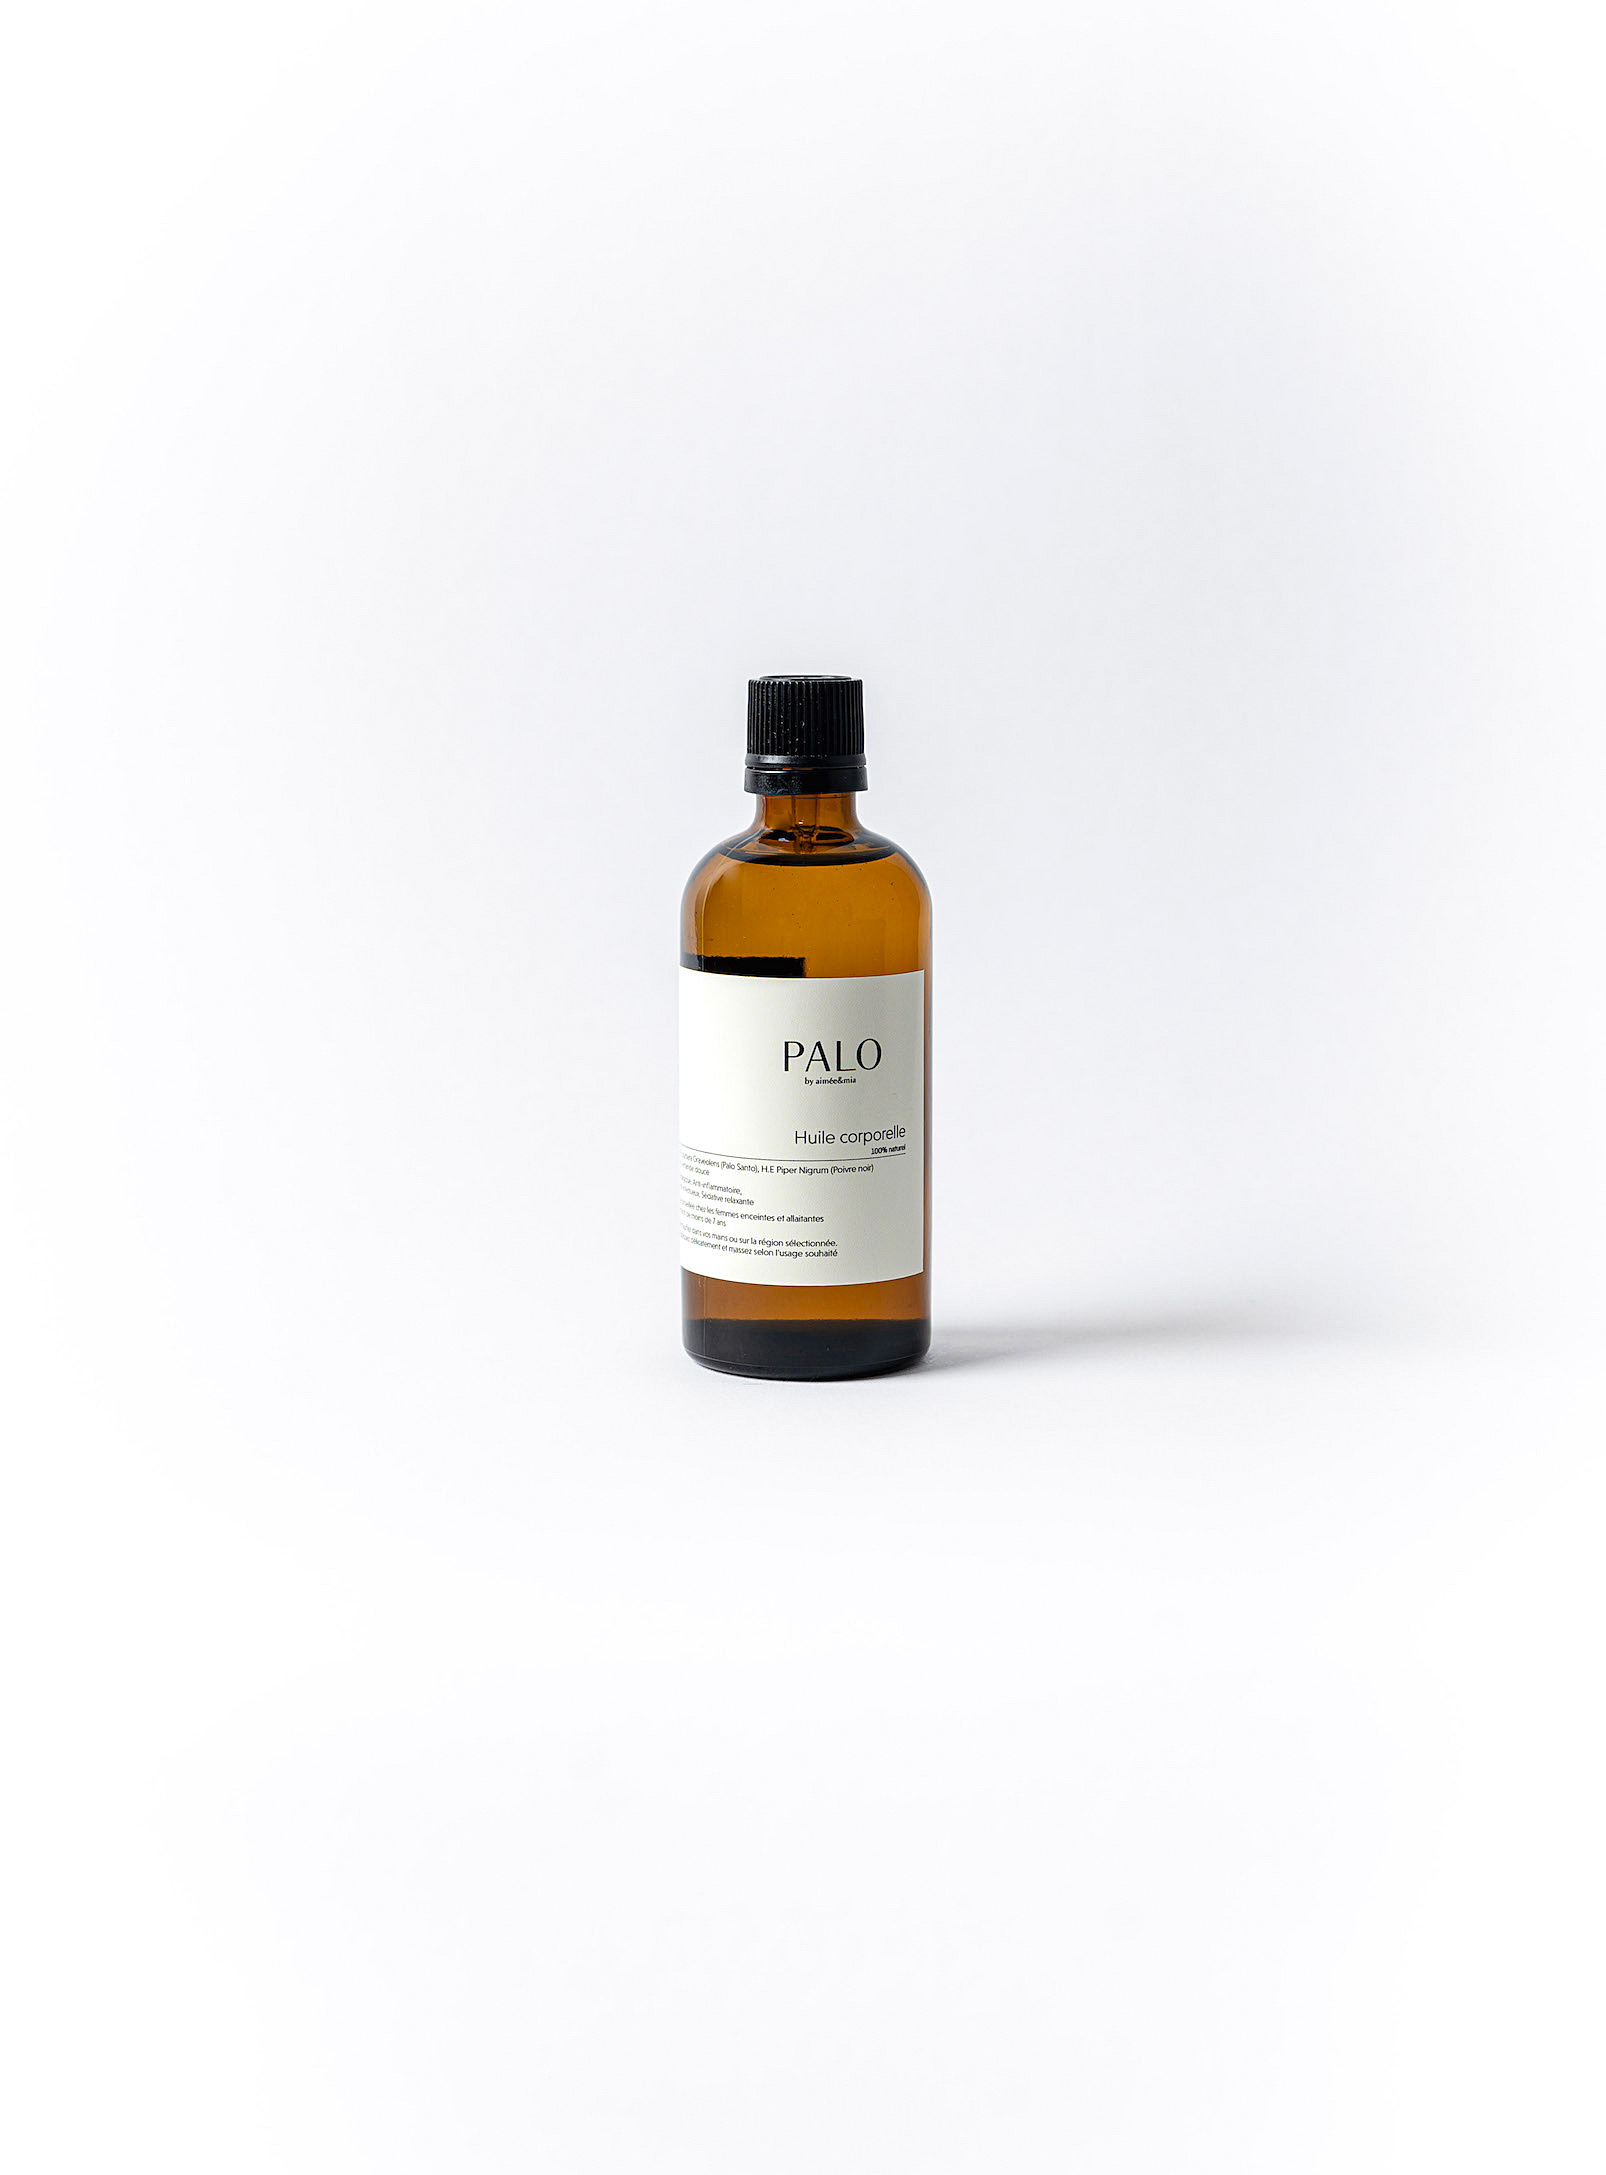 PALO - Palo santo and black pepper body oil